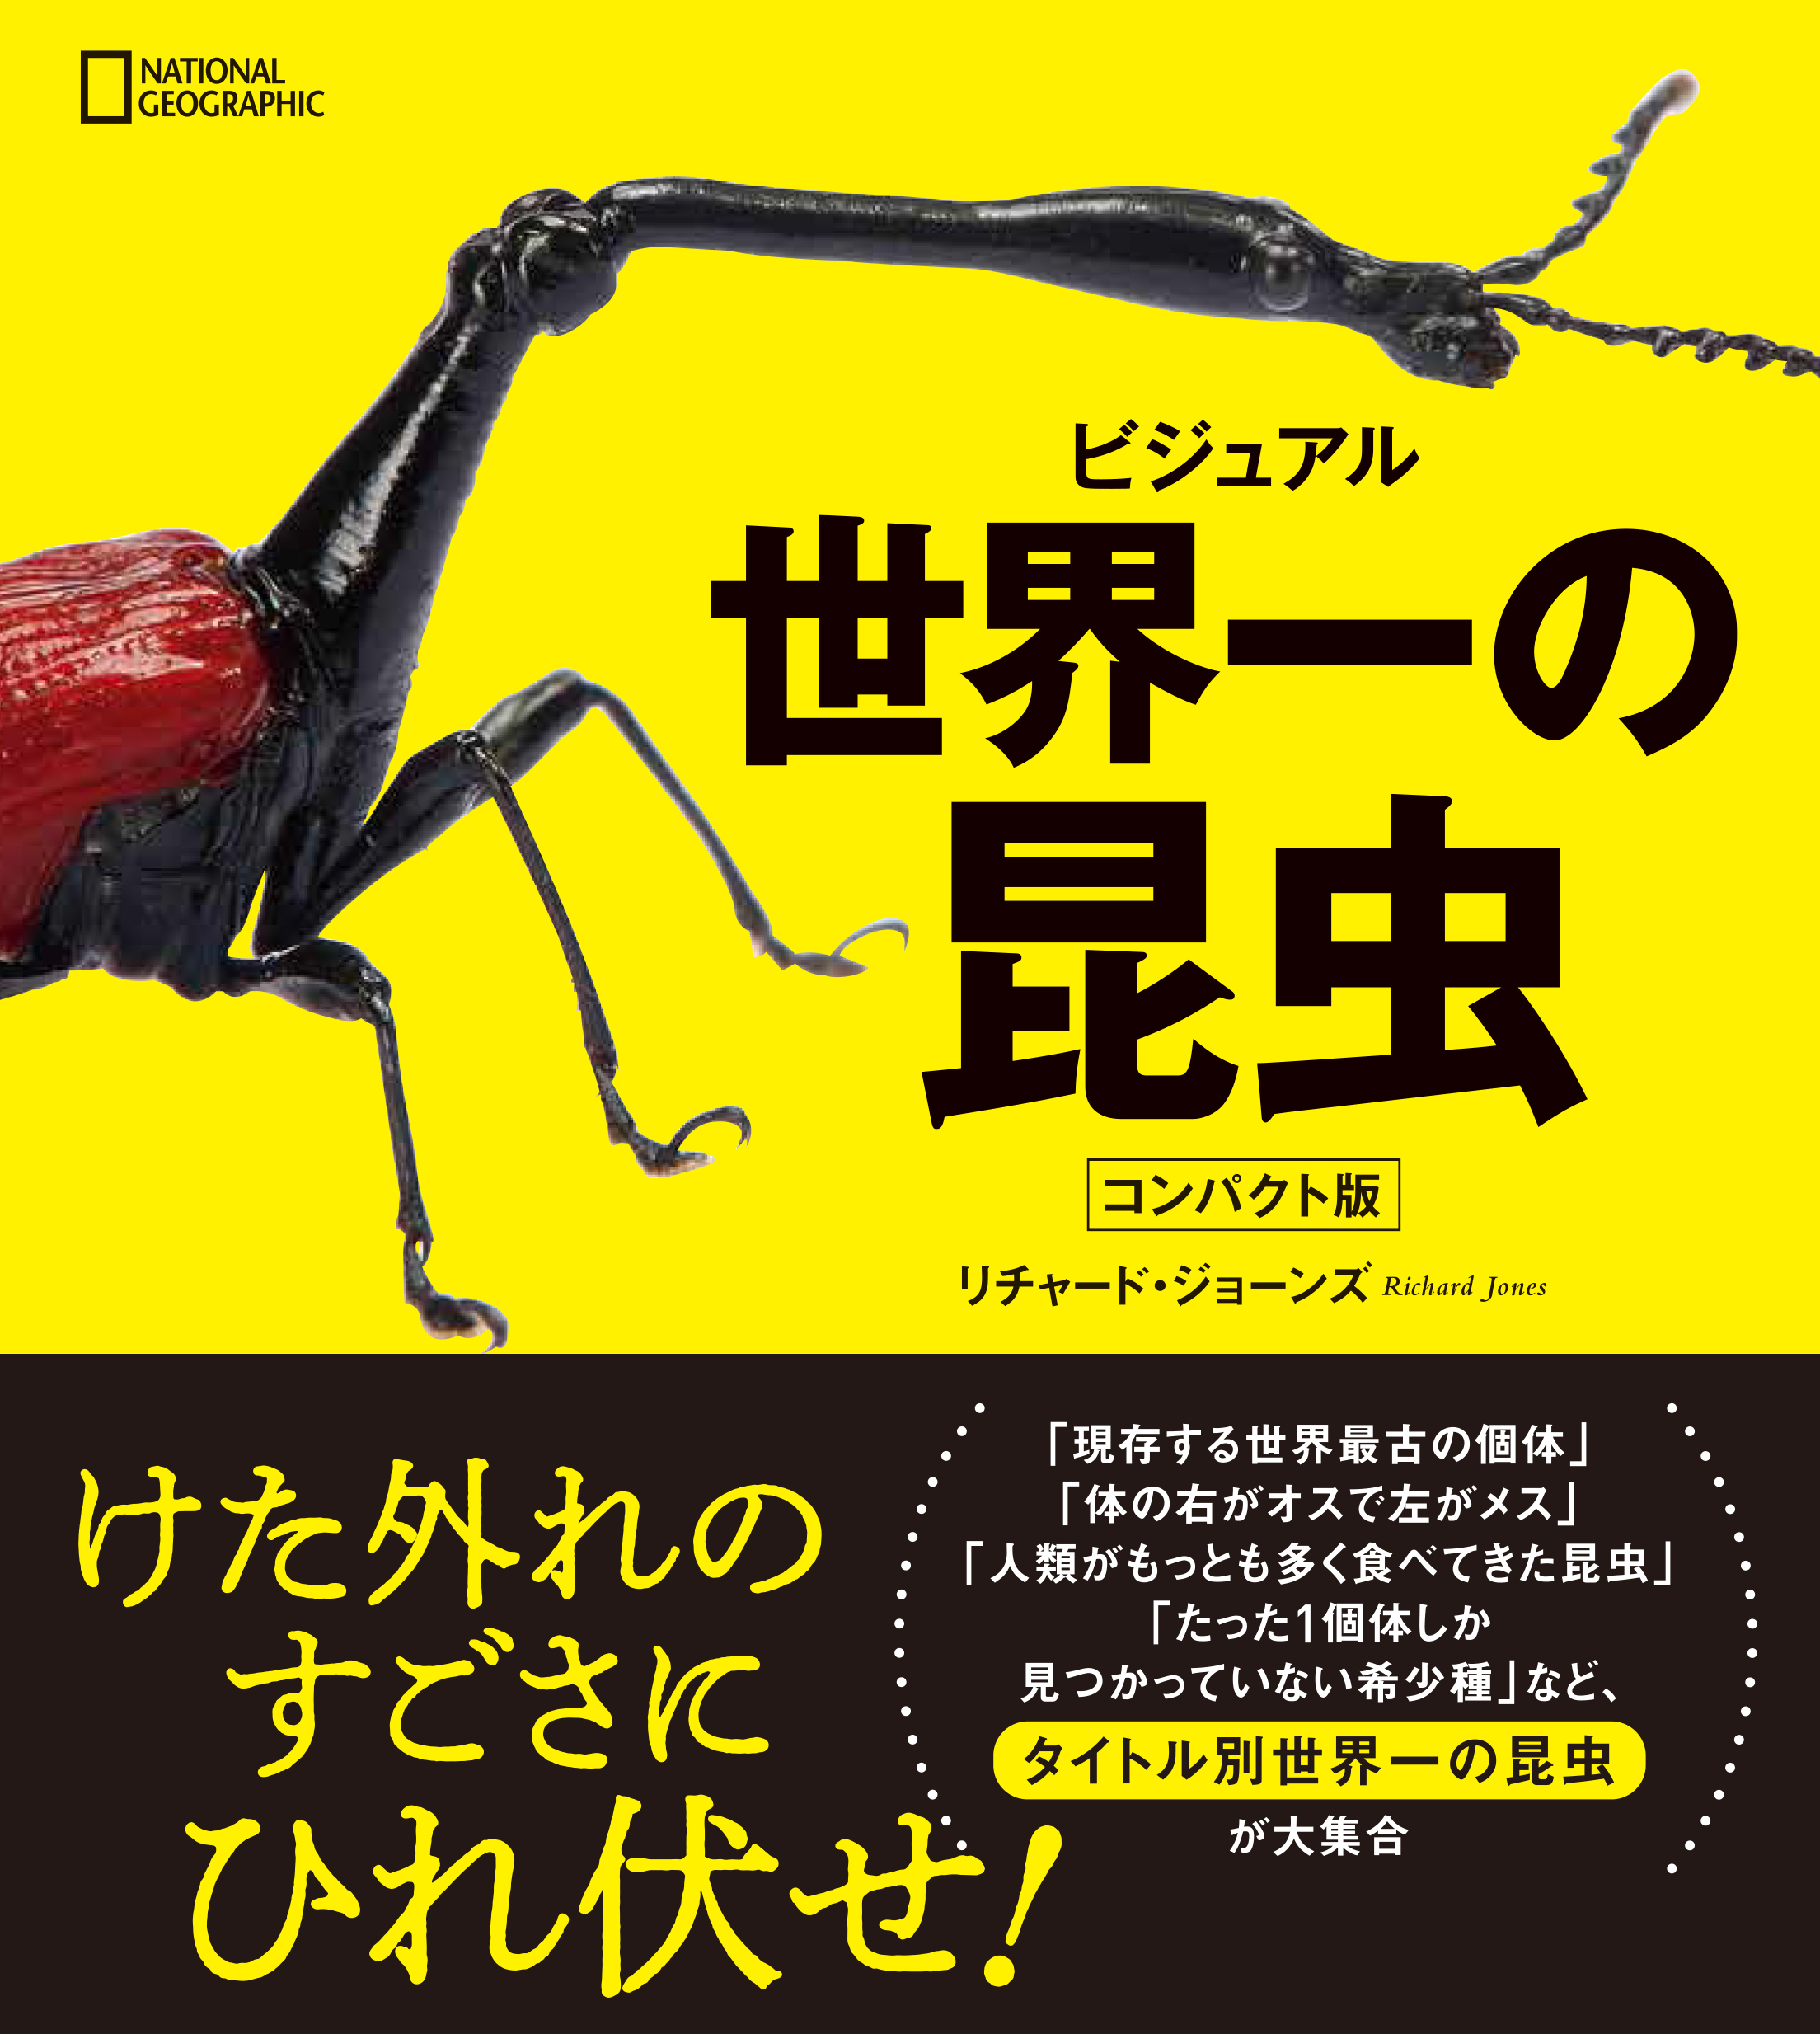 ビジュアル 世界一の昆虫 コンパクト版 発売中 日経ナショナル ジオグラフィック社のプレスリリース